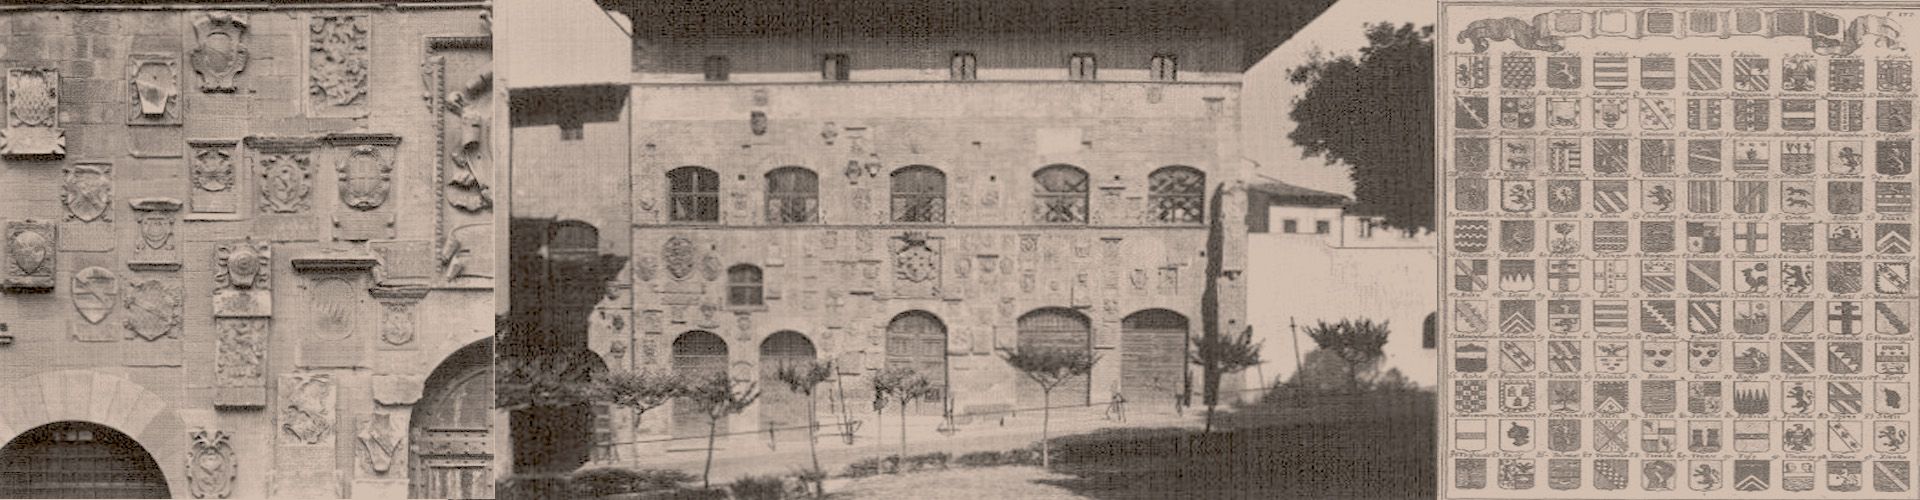 Imagens do livro Costruzione, linguaggio e lettura dello stemma, a cura di Marcello del Piazzo, págs. 520, 534 e 535.